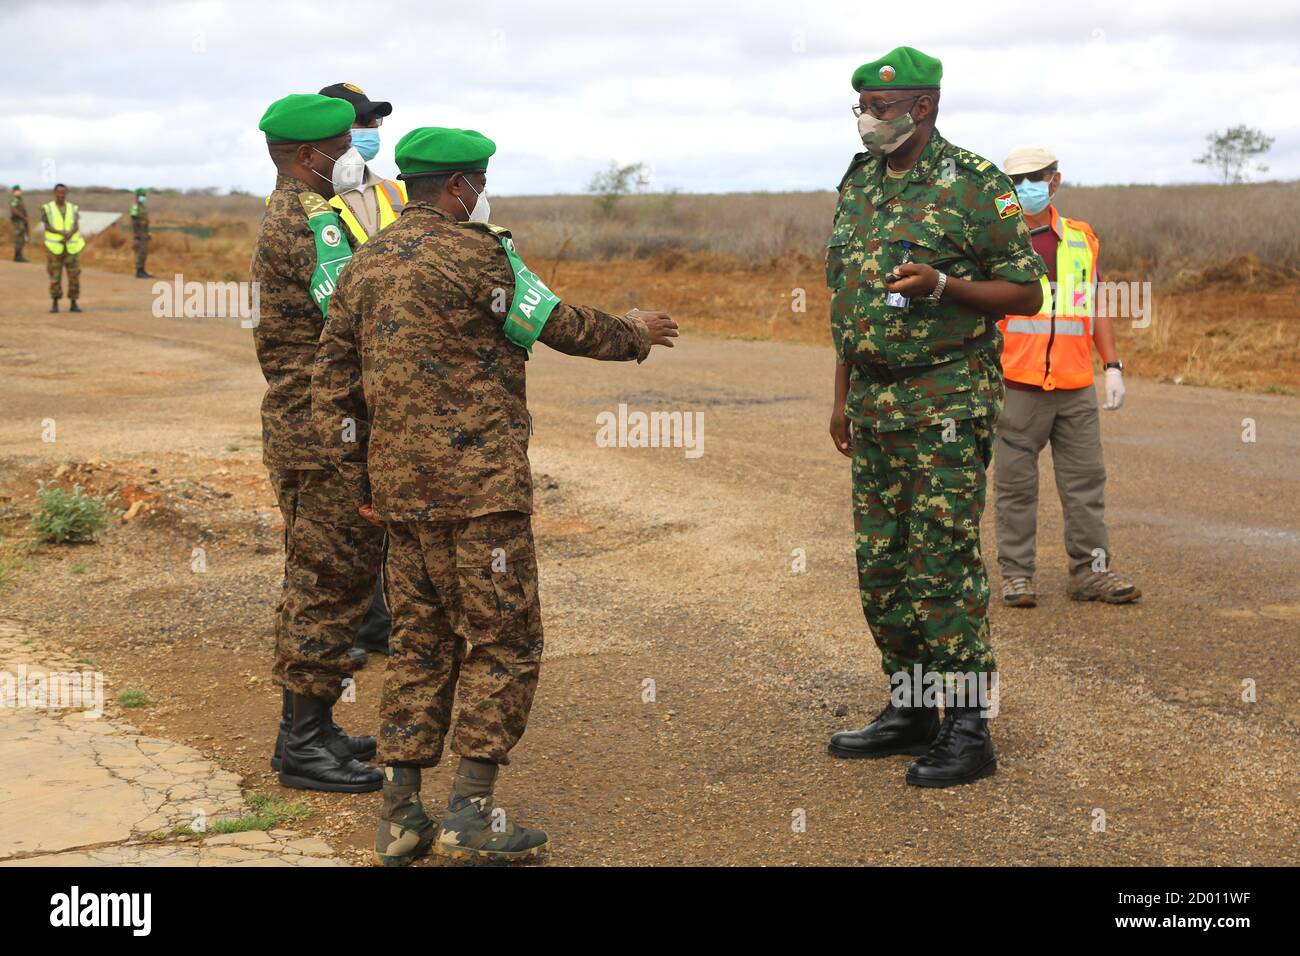 El Teniente General Diomede Ndegeya (derecha), Comandante de la Fuerza de la Misión de la Unión Africana en Somalia (AMISOM) es recibido por oficiales militares superiores de la AMISOM en el sector tres, a su llegada a Baidoa, en el estado de Somalia sudoccidental, en una gira de familiarización el 23 de septiembre de 2020/ Foto de stock